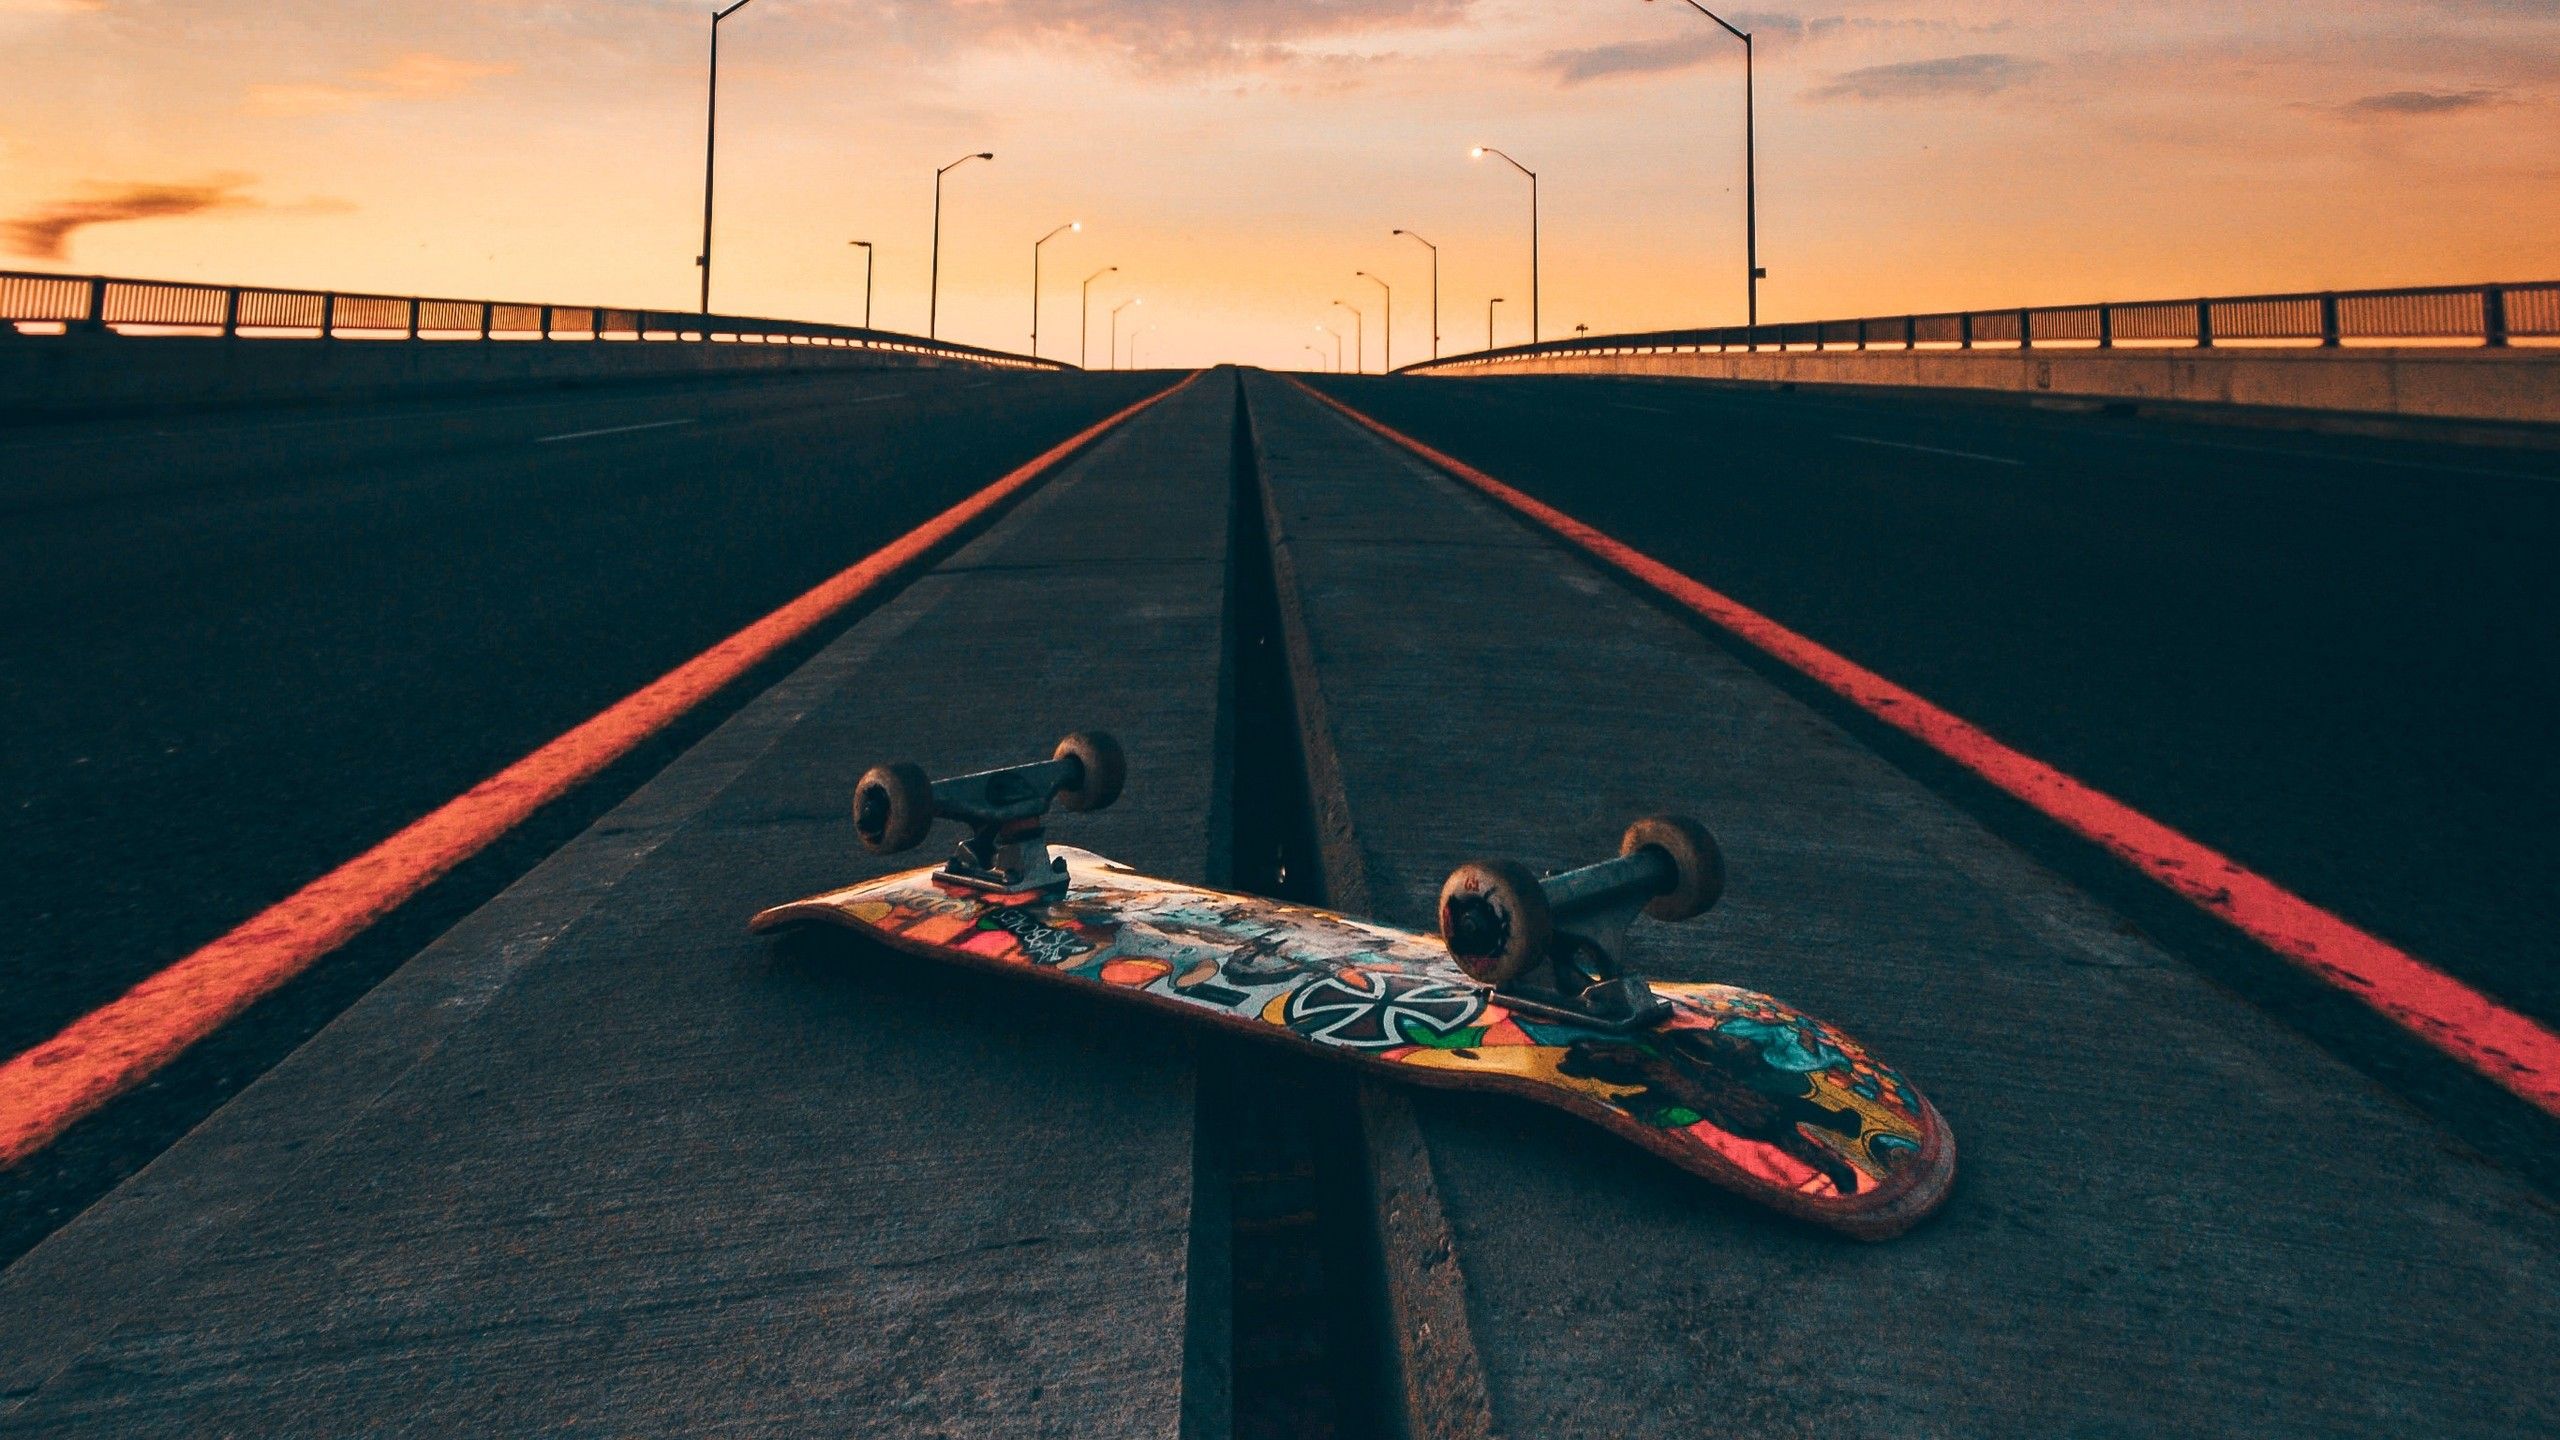 Wallpaper Of Skateboards